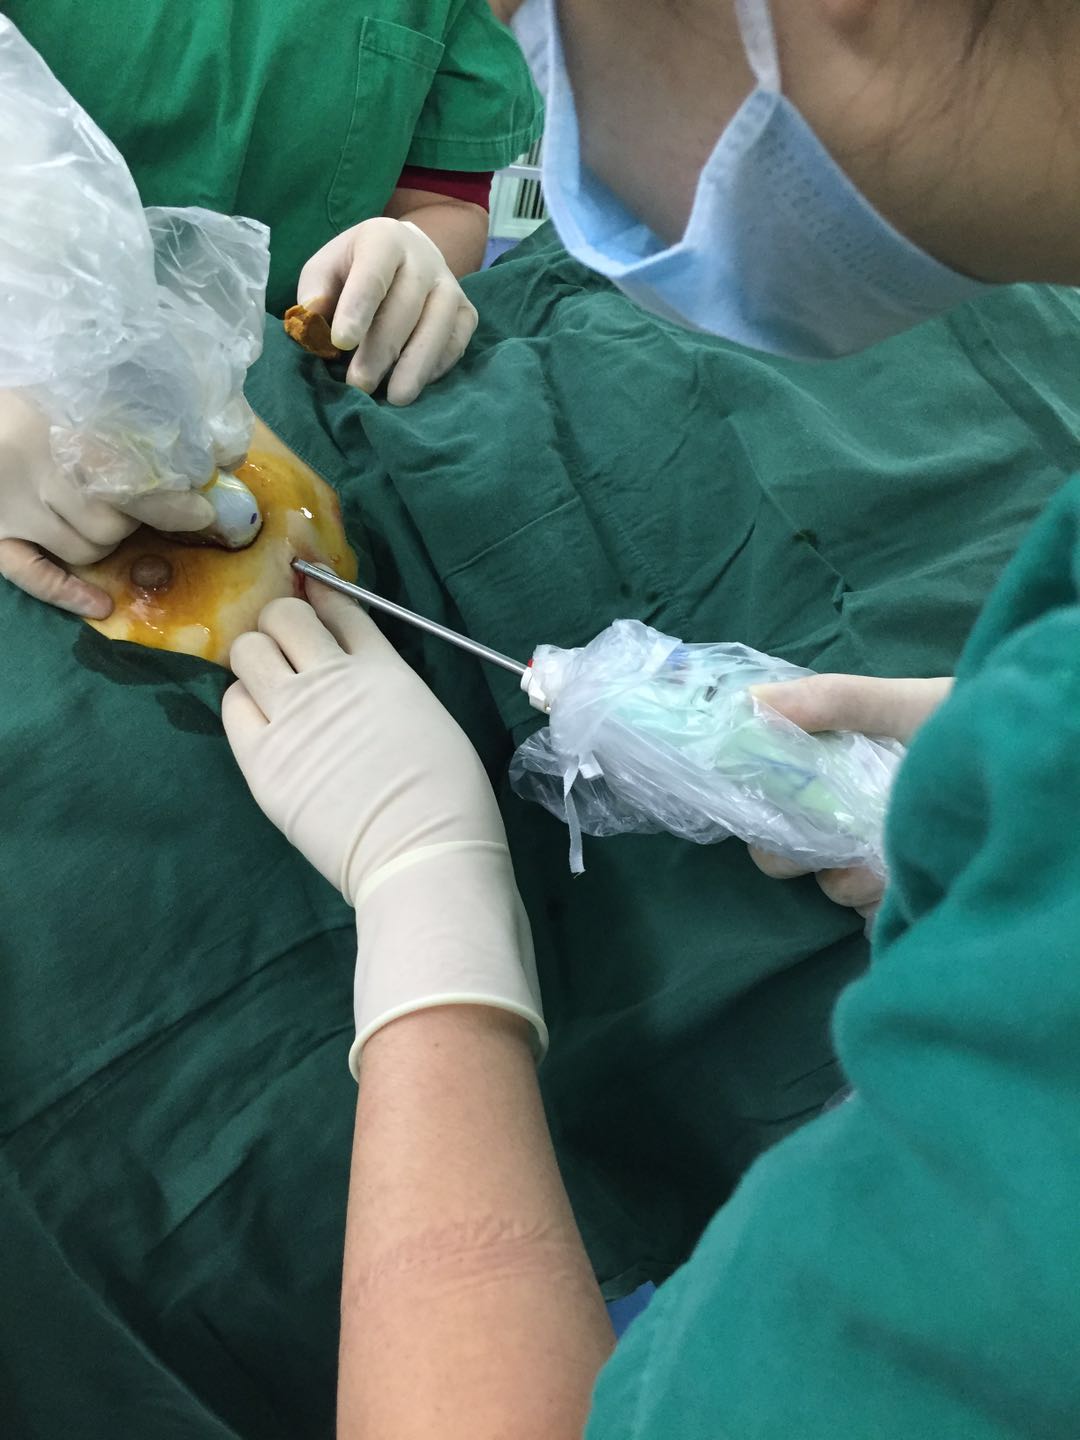 肿块切除后行残腔超声复查手术区域,若无异